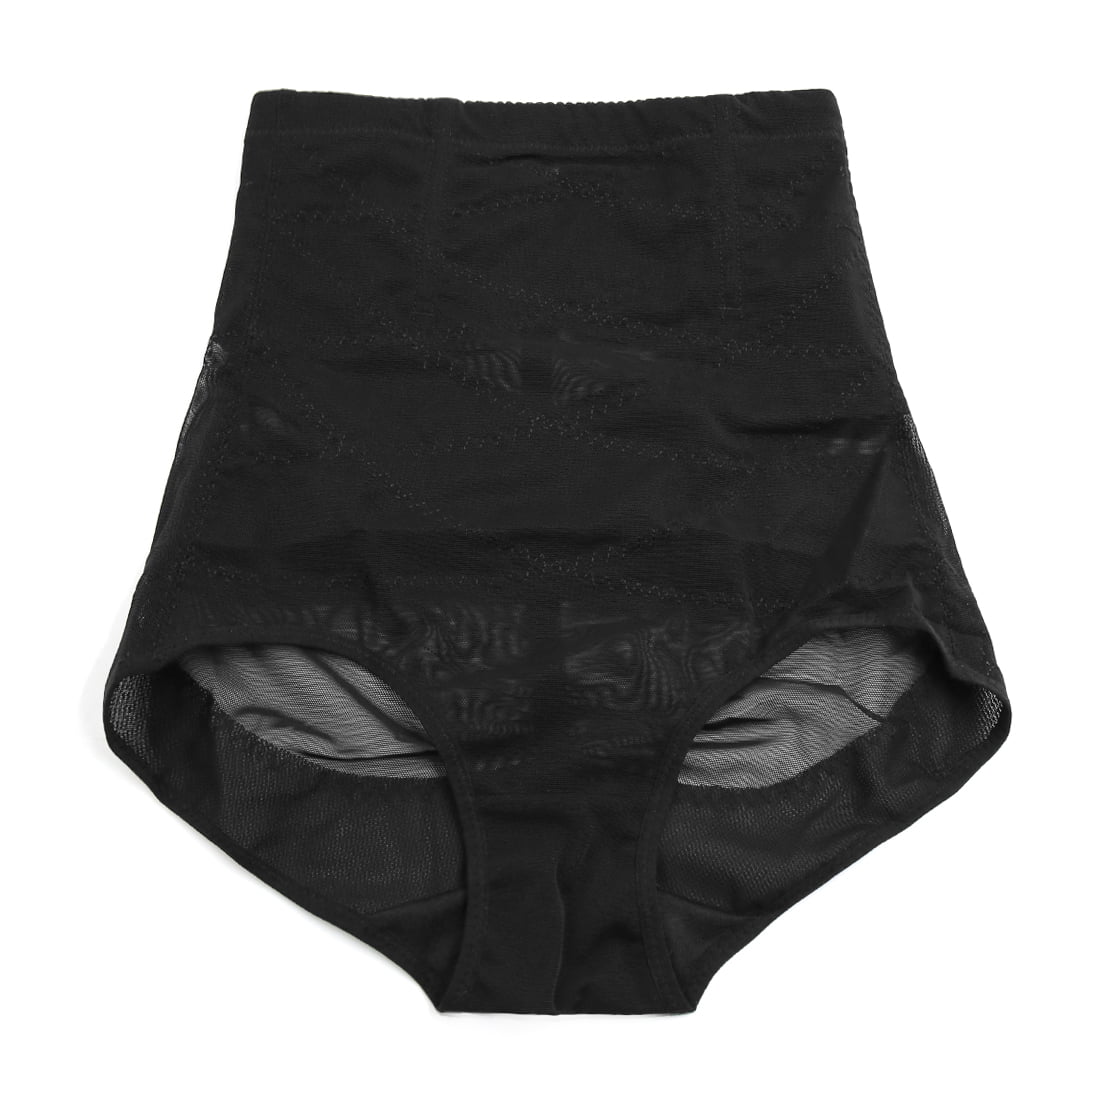 xxl underwear